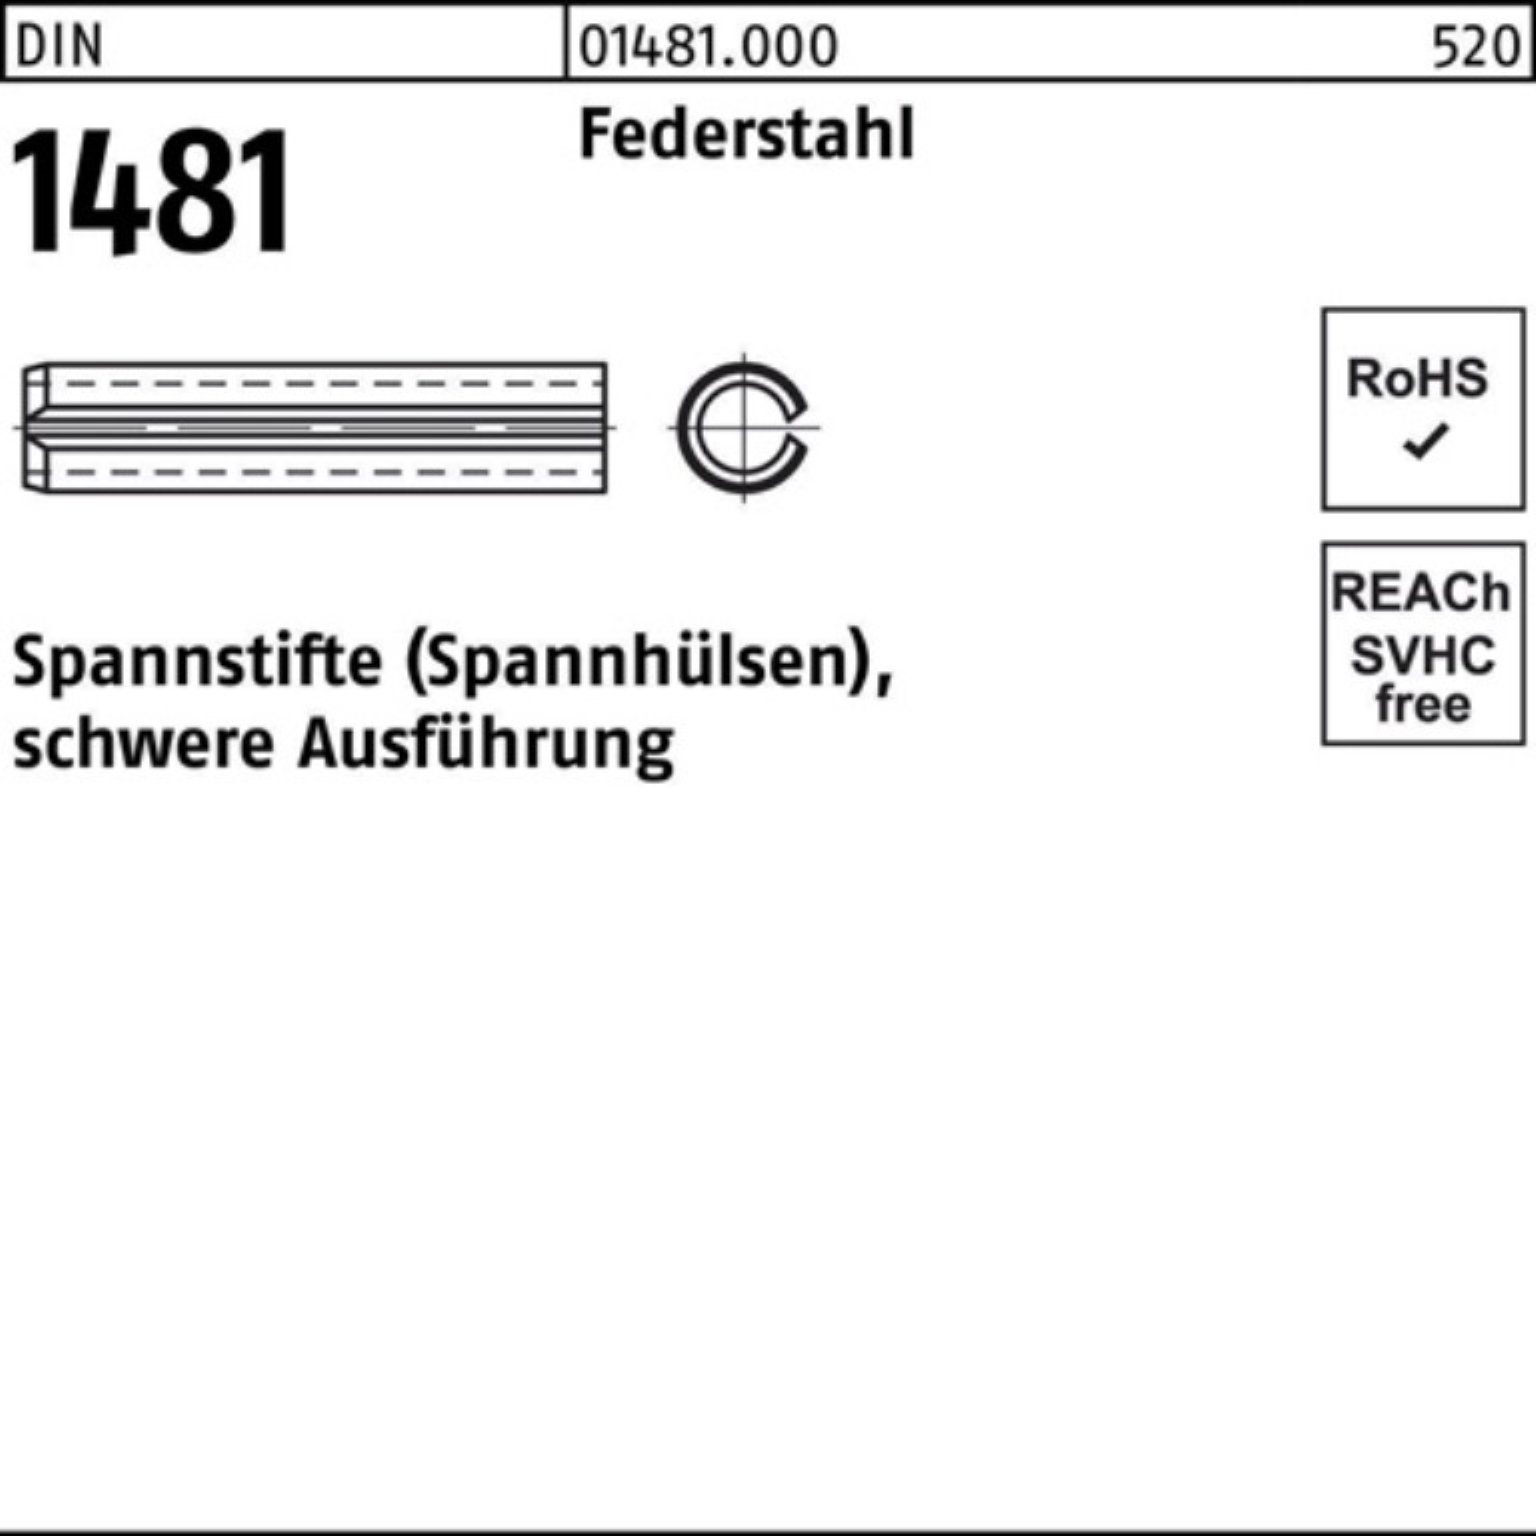 Reyher Spannstift 100er Pack Spannstift DIN 1481 10x 40 Federstahl schwere Ausführung 1